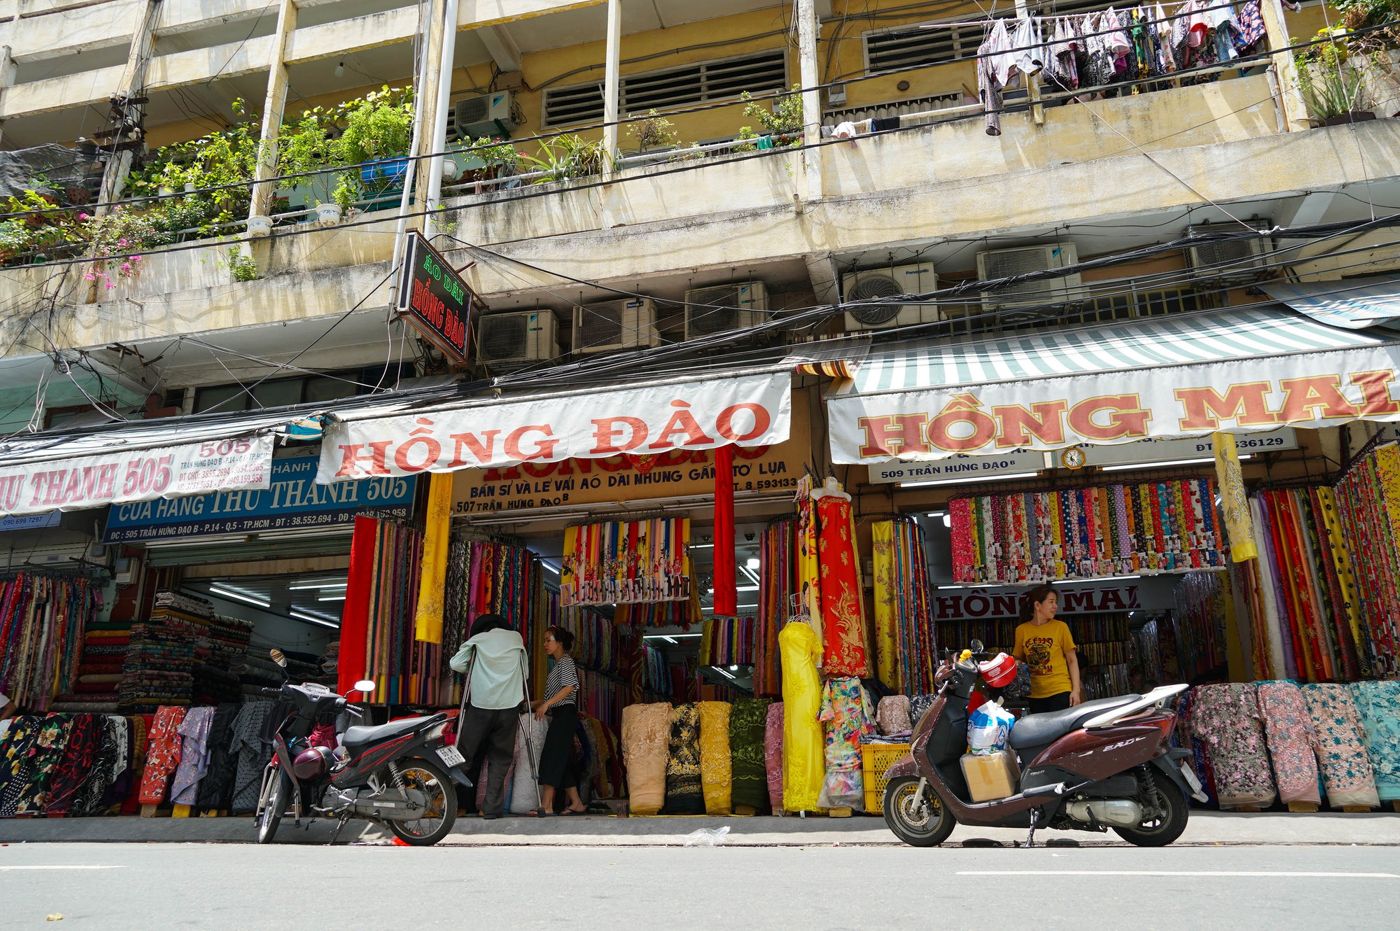 Soai Kinh Lam Market